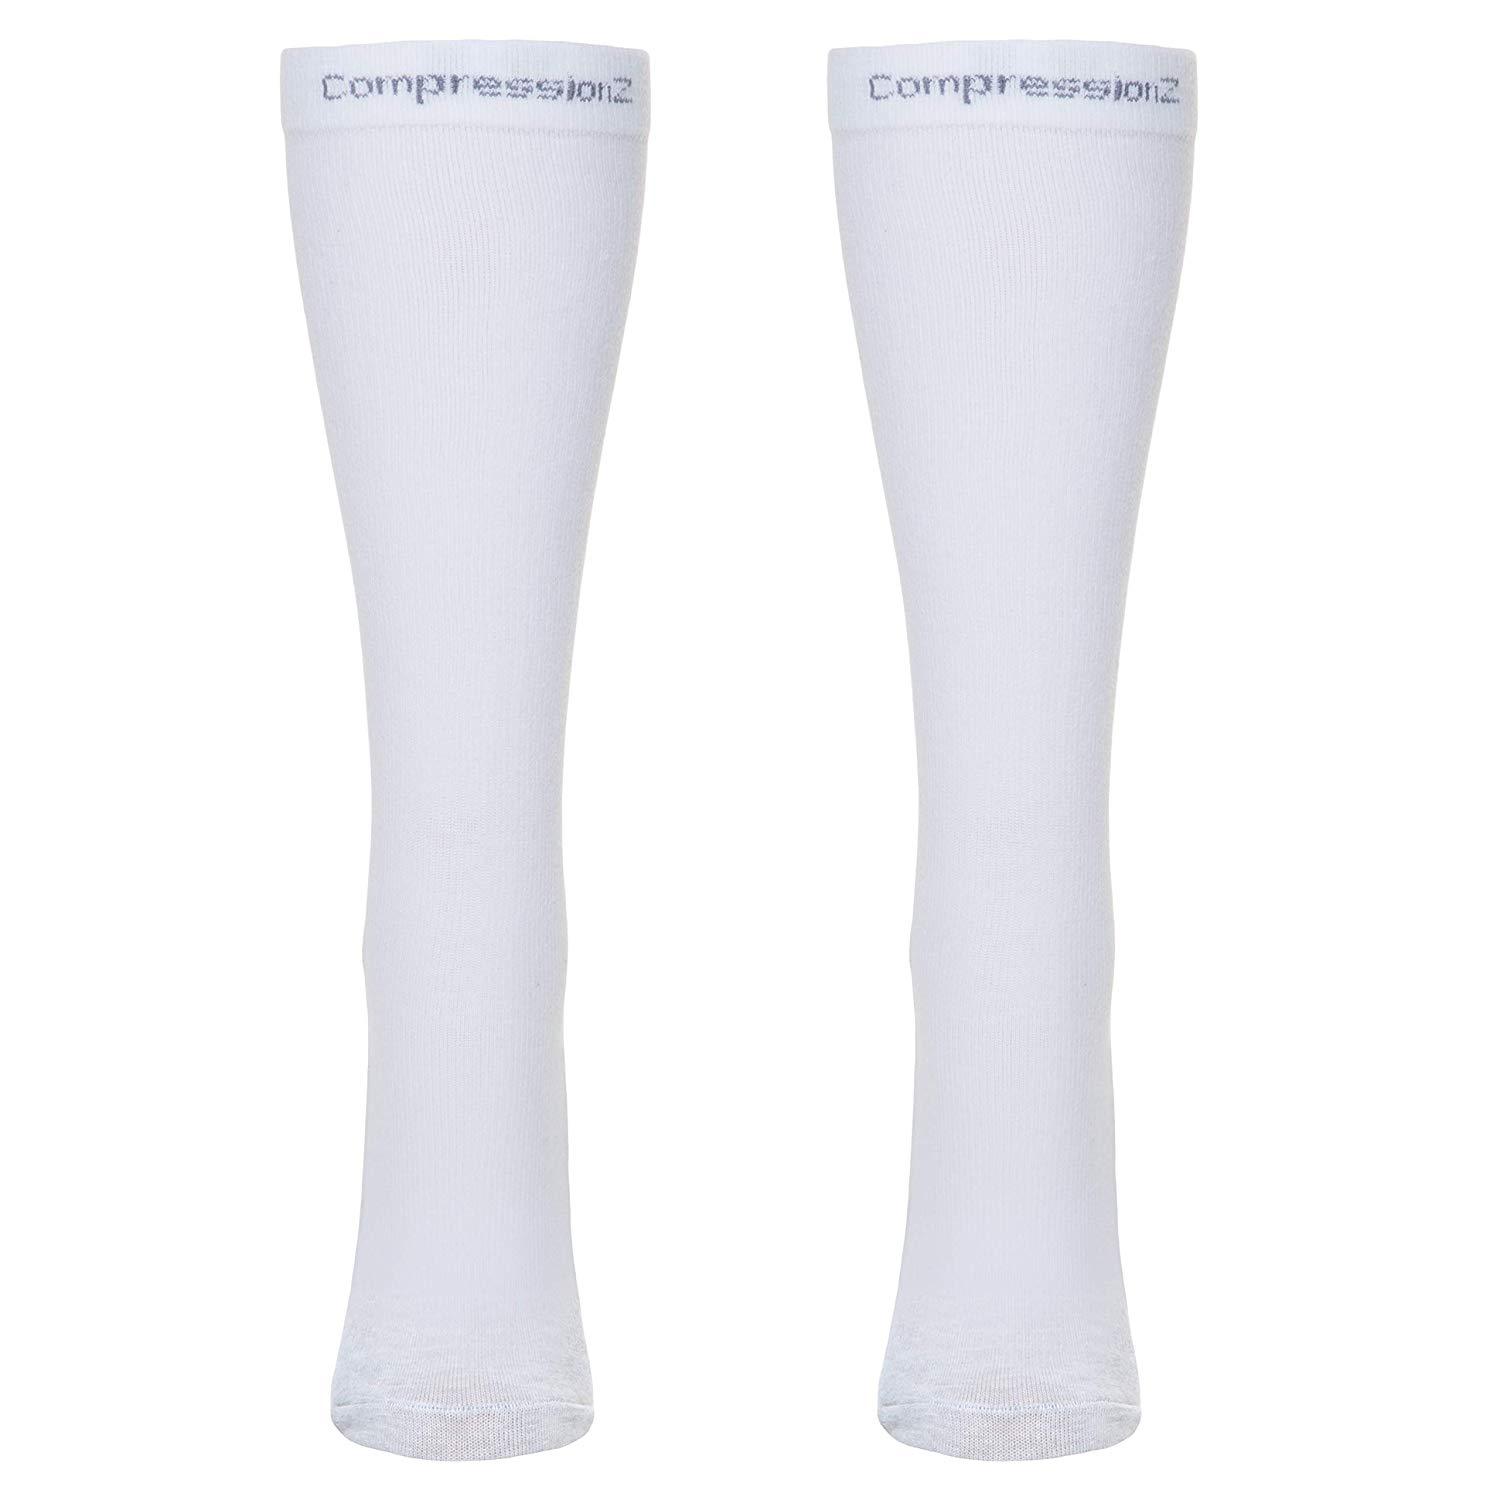 Compression Socks (20-30 mmHg) - White 2 Pack